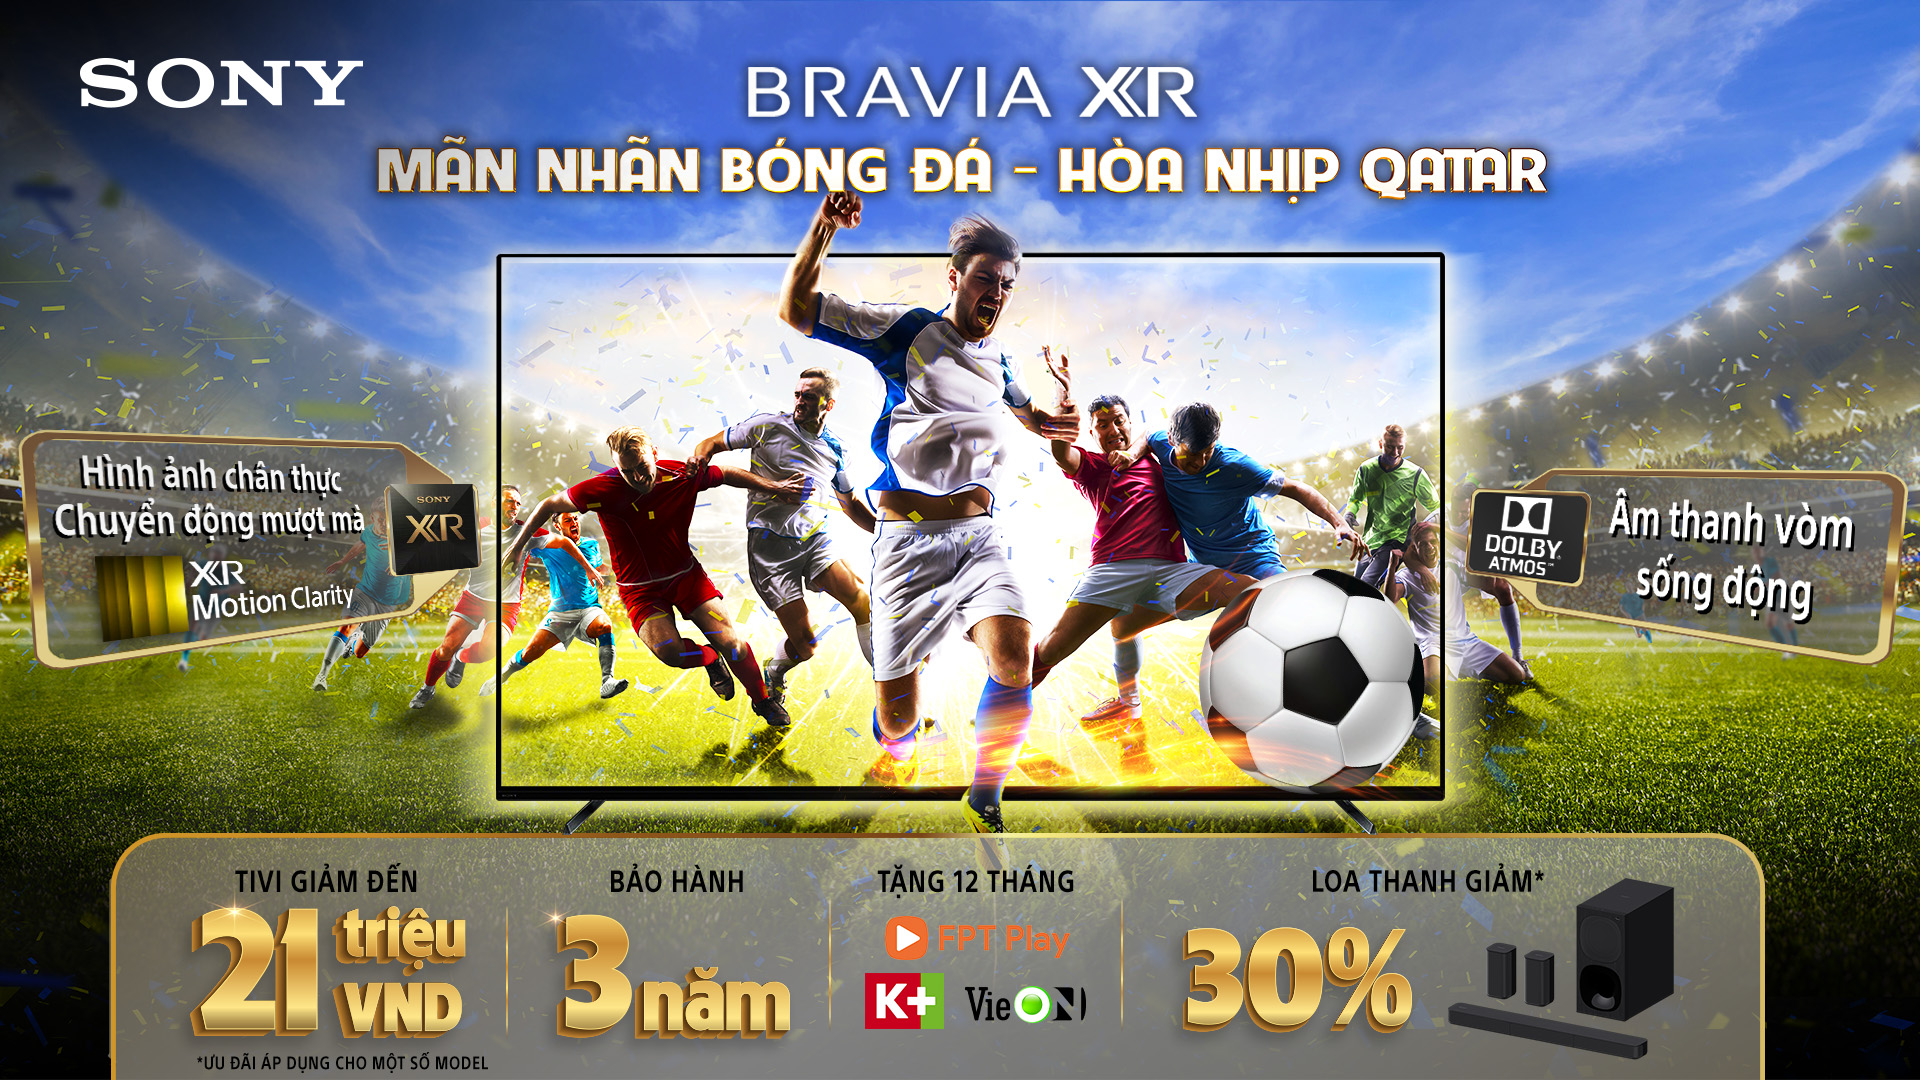 Mua TV Sony BRAVIA, nhận ngay khuyến mãi hấp dẫn từ chương trình “Mãn nhãn bóng đá – Hoà nhịp Qatar”